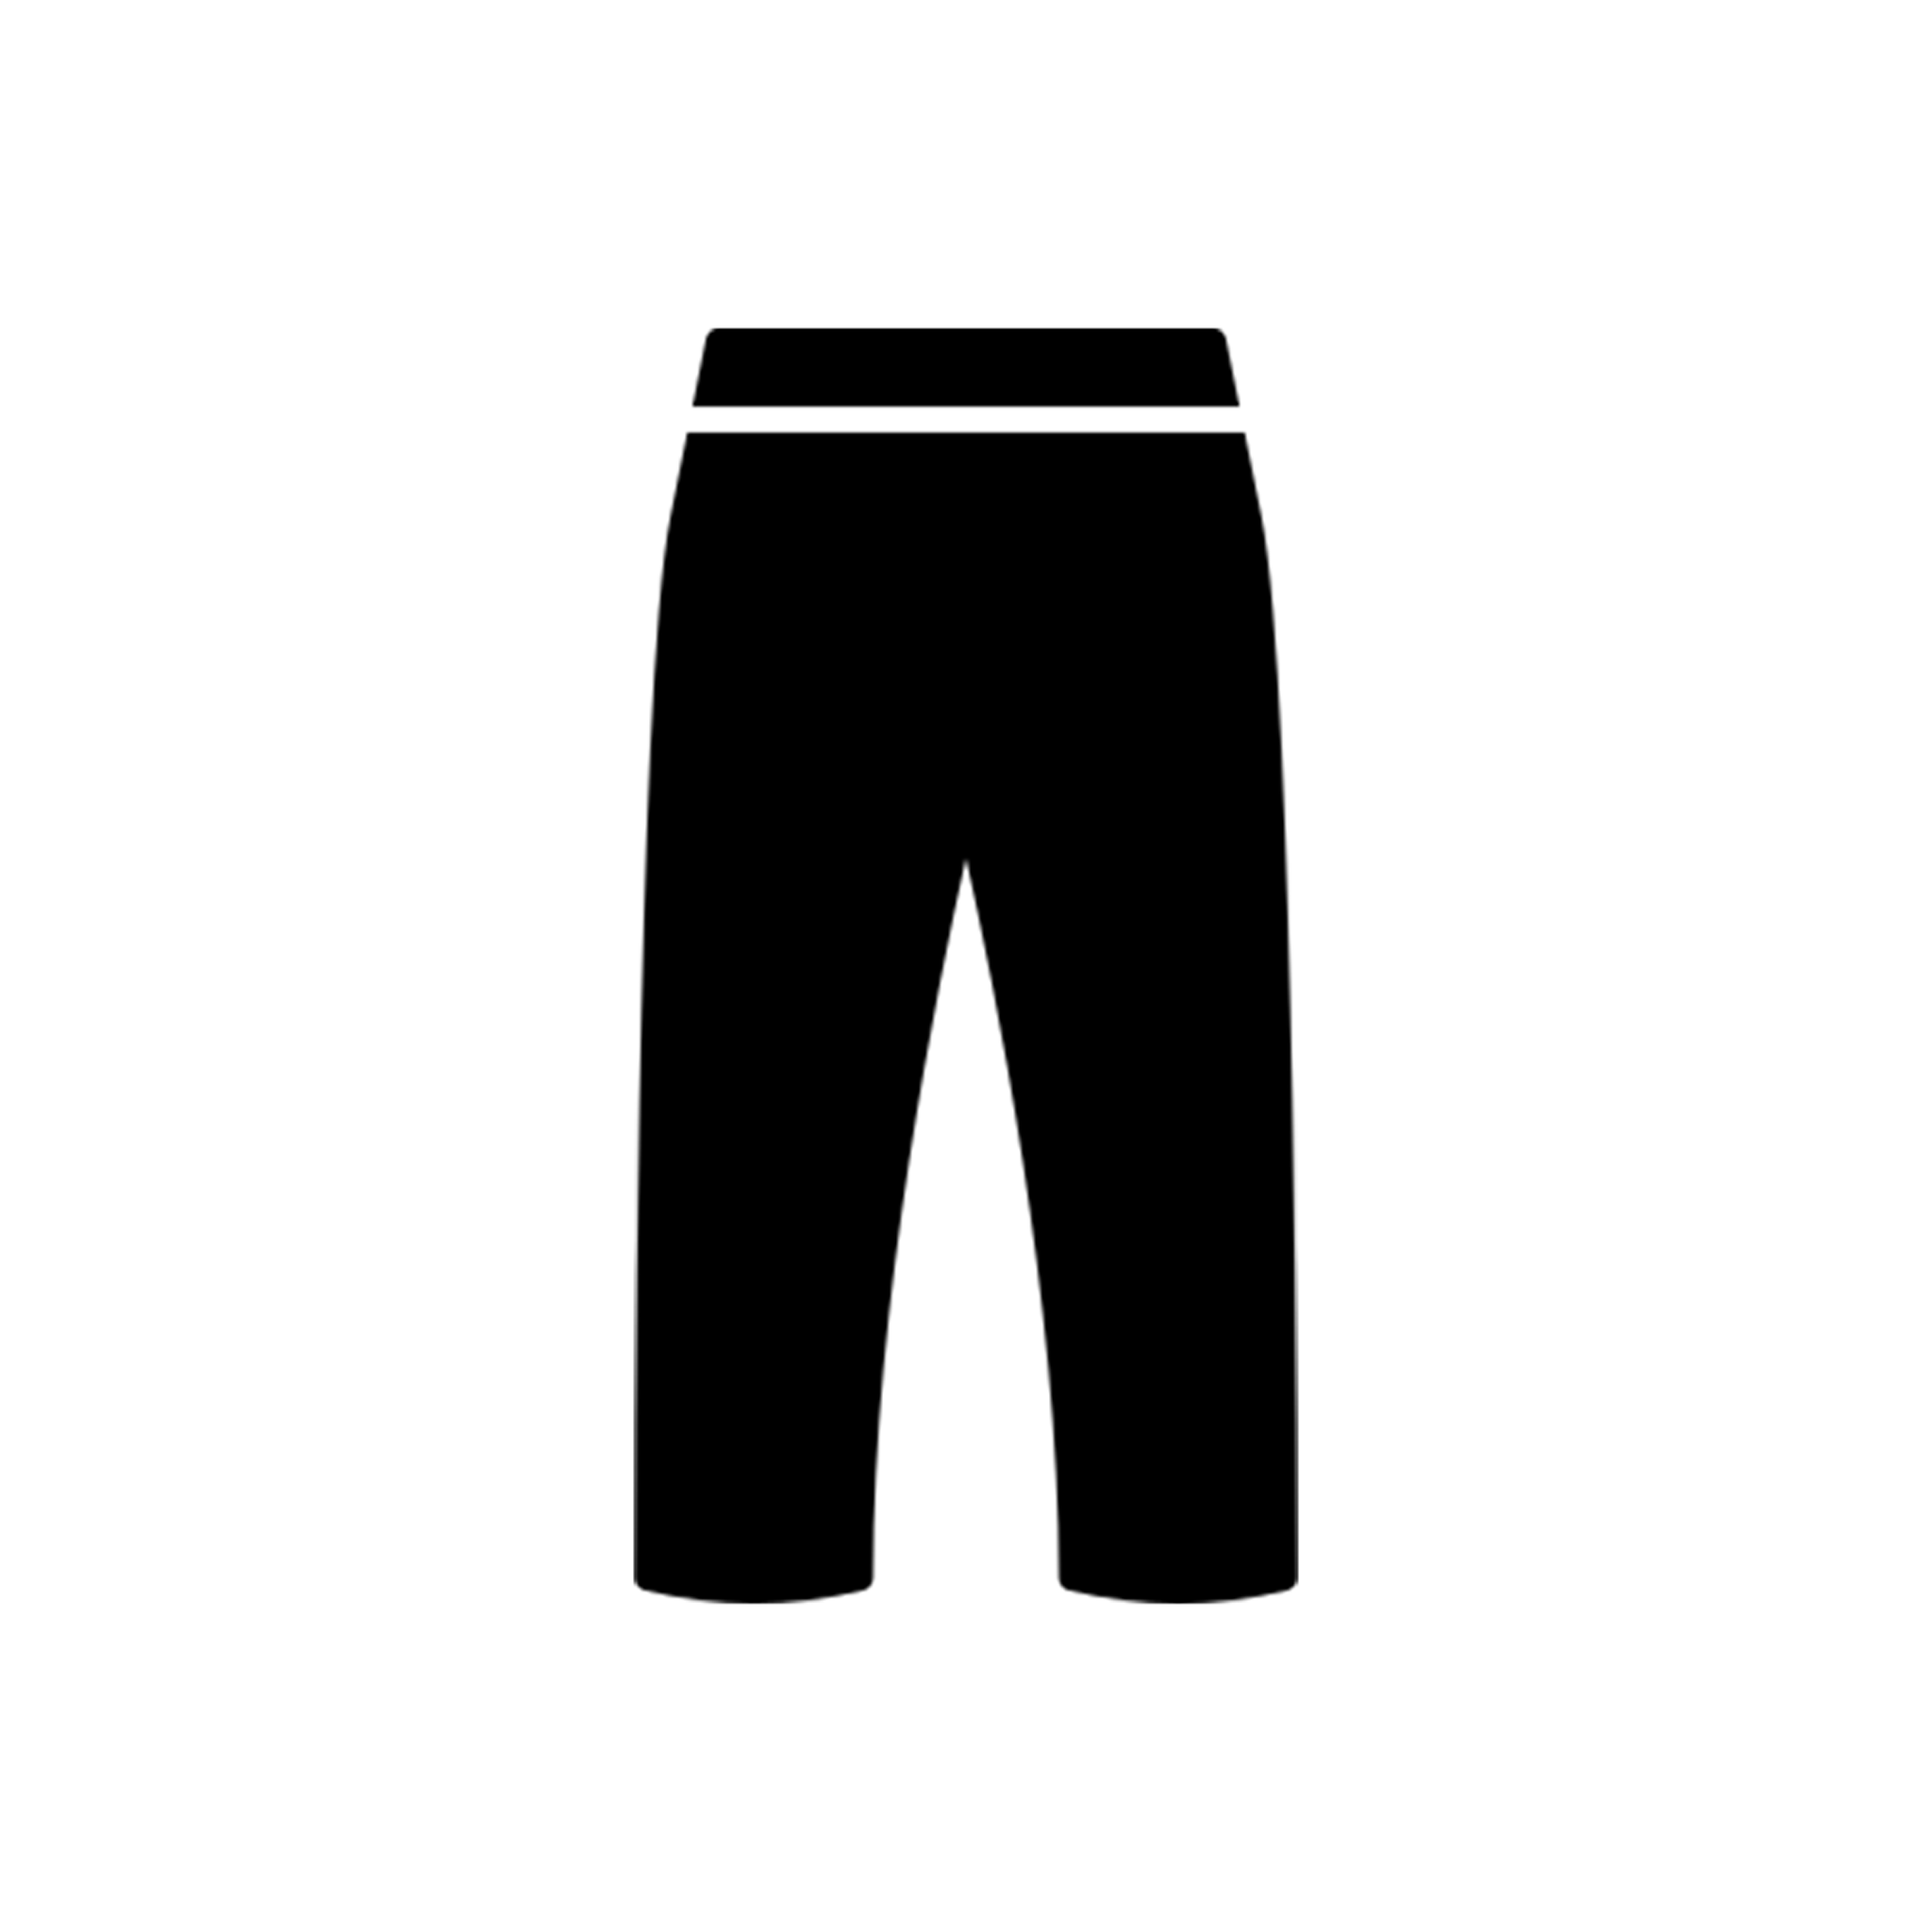 Pants – Buy Women's Pants Online – AIM'N EU